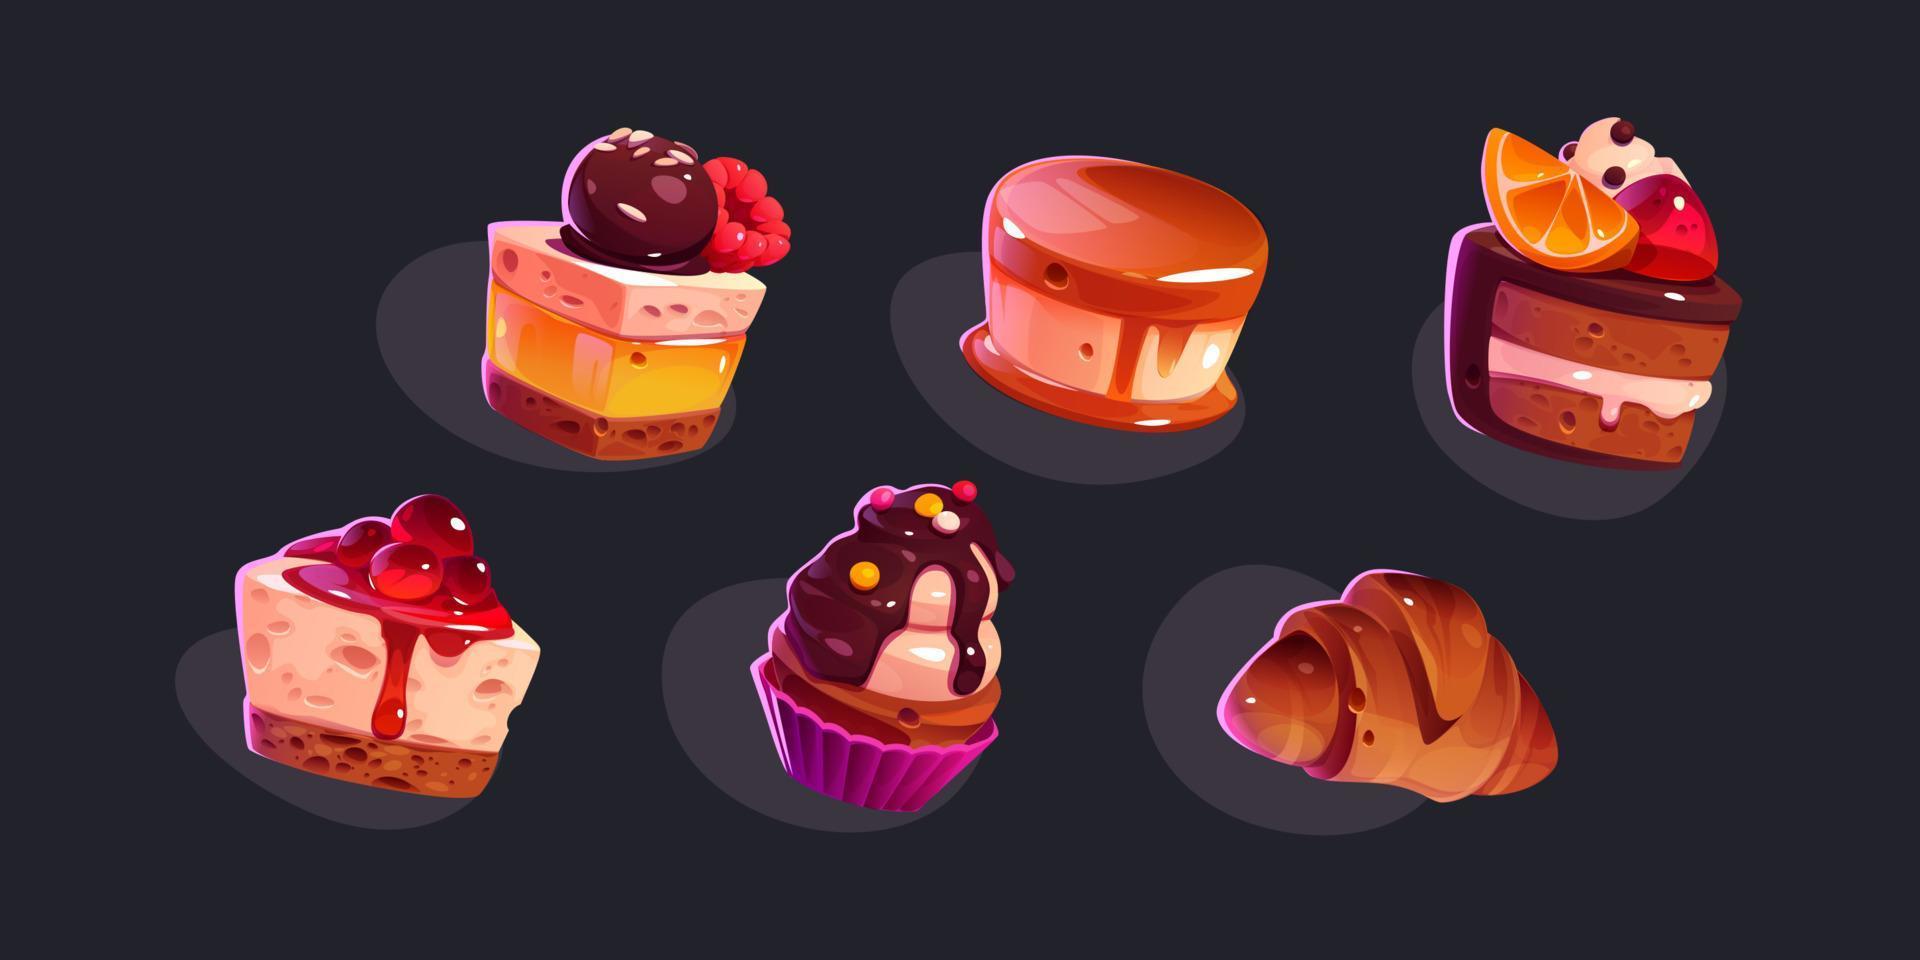 süße Desserts, Kuchen, Cupcakes und Croissants vektor